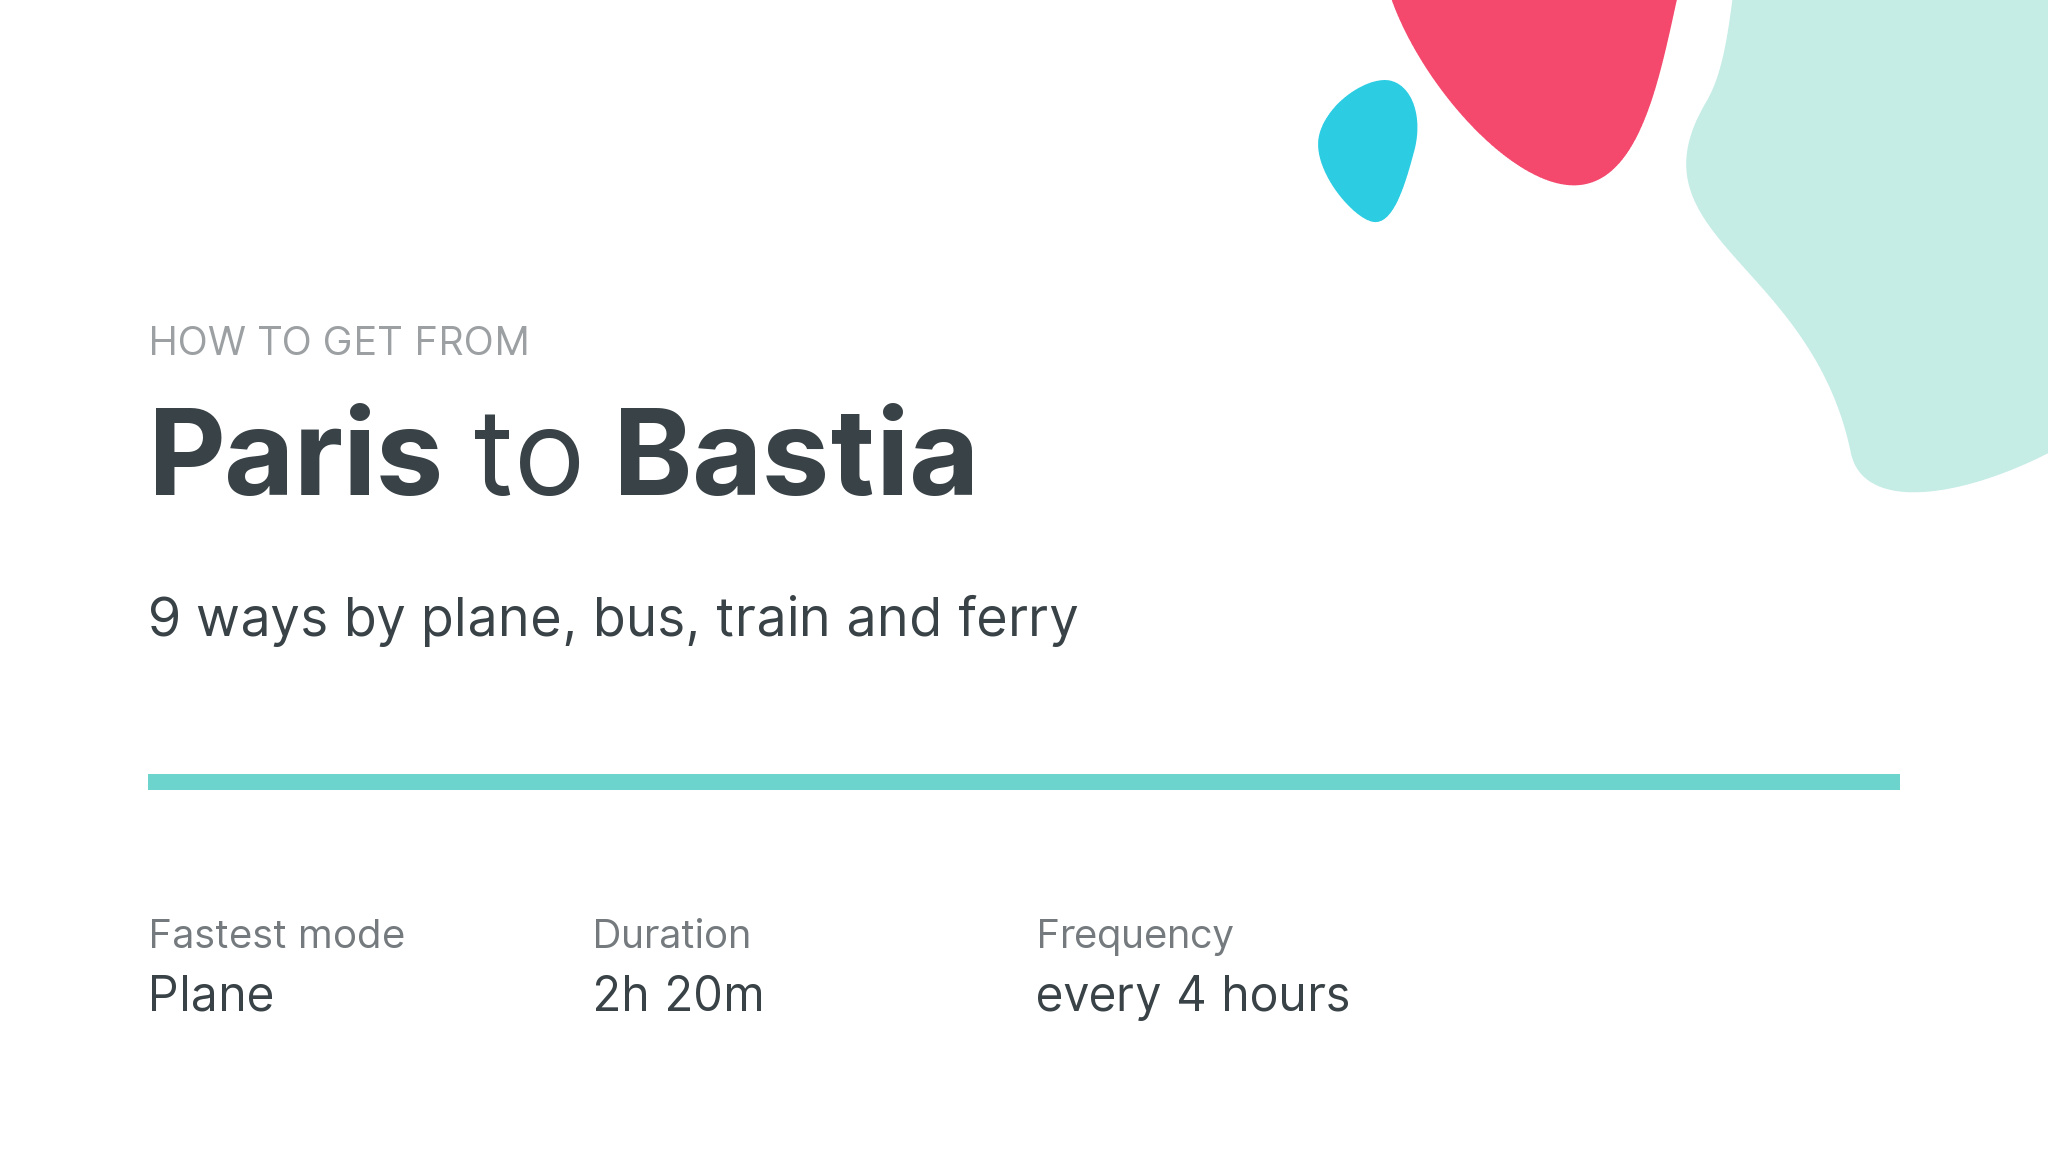 How do I get from Paris to Bastia